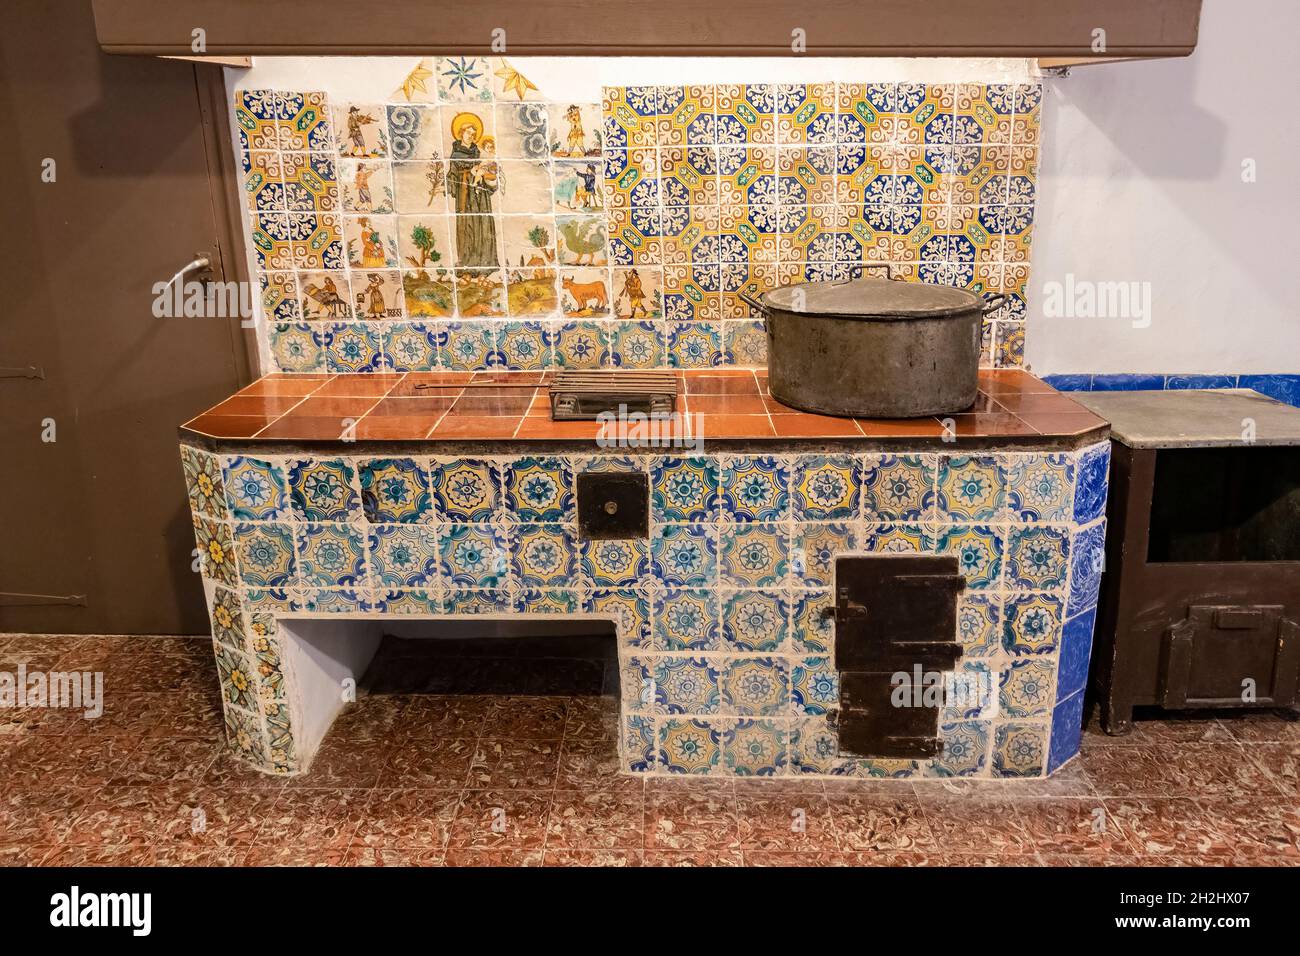 Barcelone, Espagne - 24 septembre 2021 : la cuisine à l'intérieur du monastère de Pedralbes.C'est l'une des zones du monastère qui reflète le mieux les pas Banque D'Images